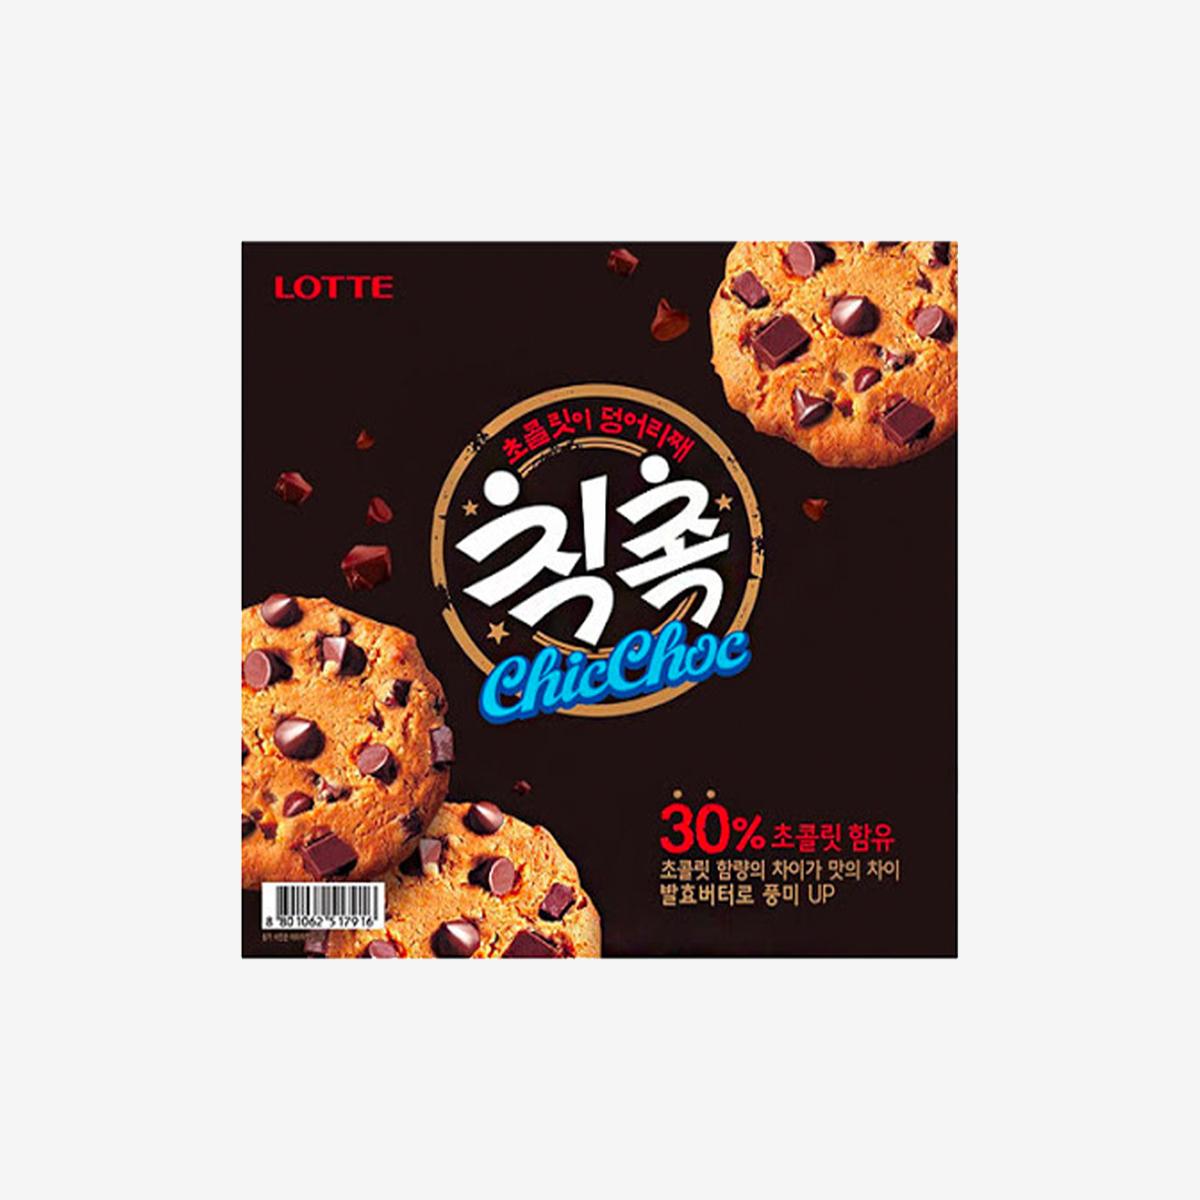 korean brand lotte's original chicchoc box 